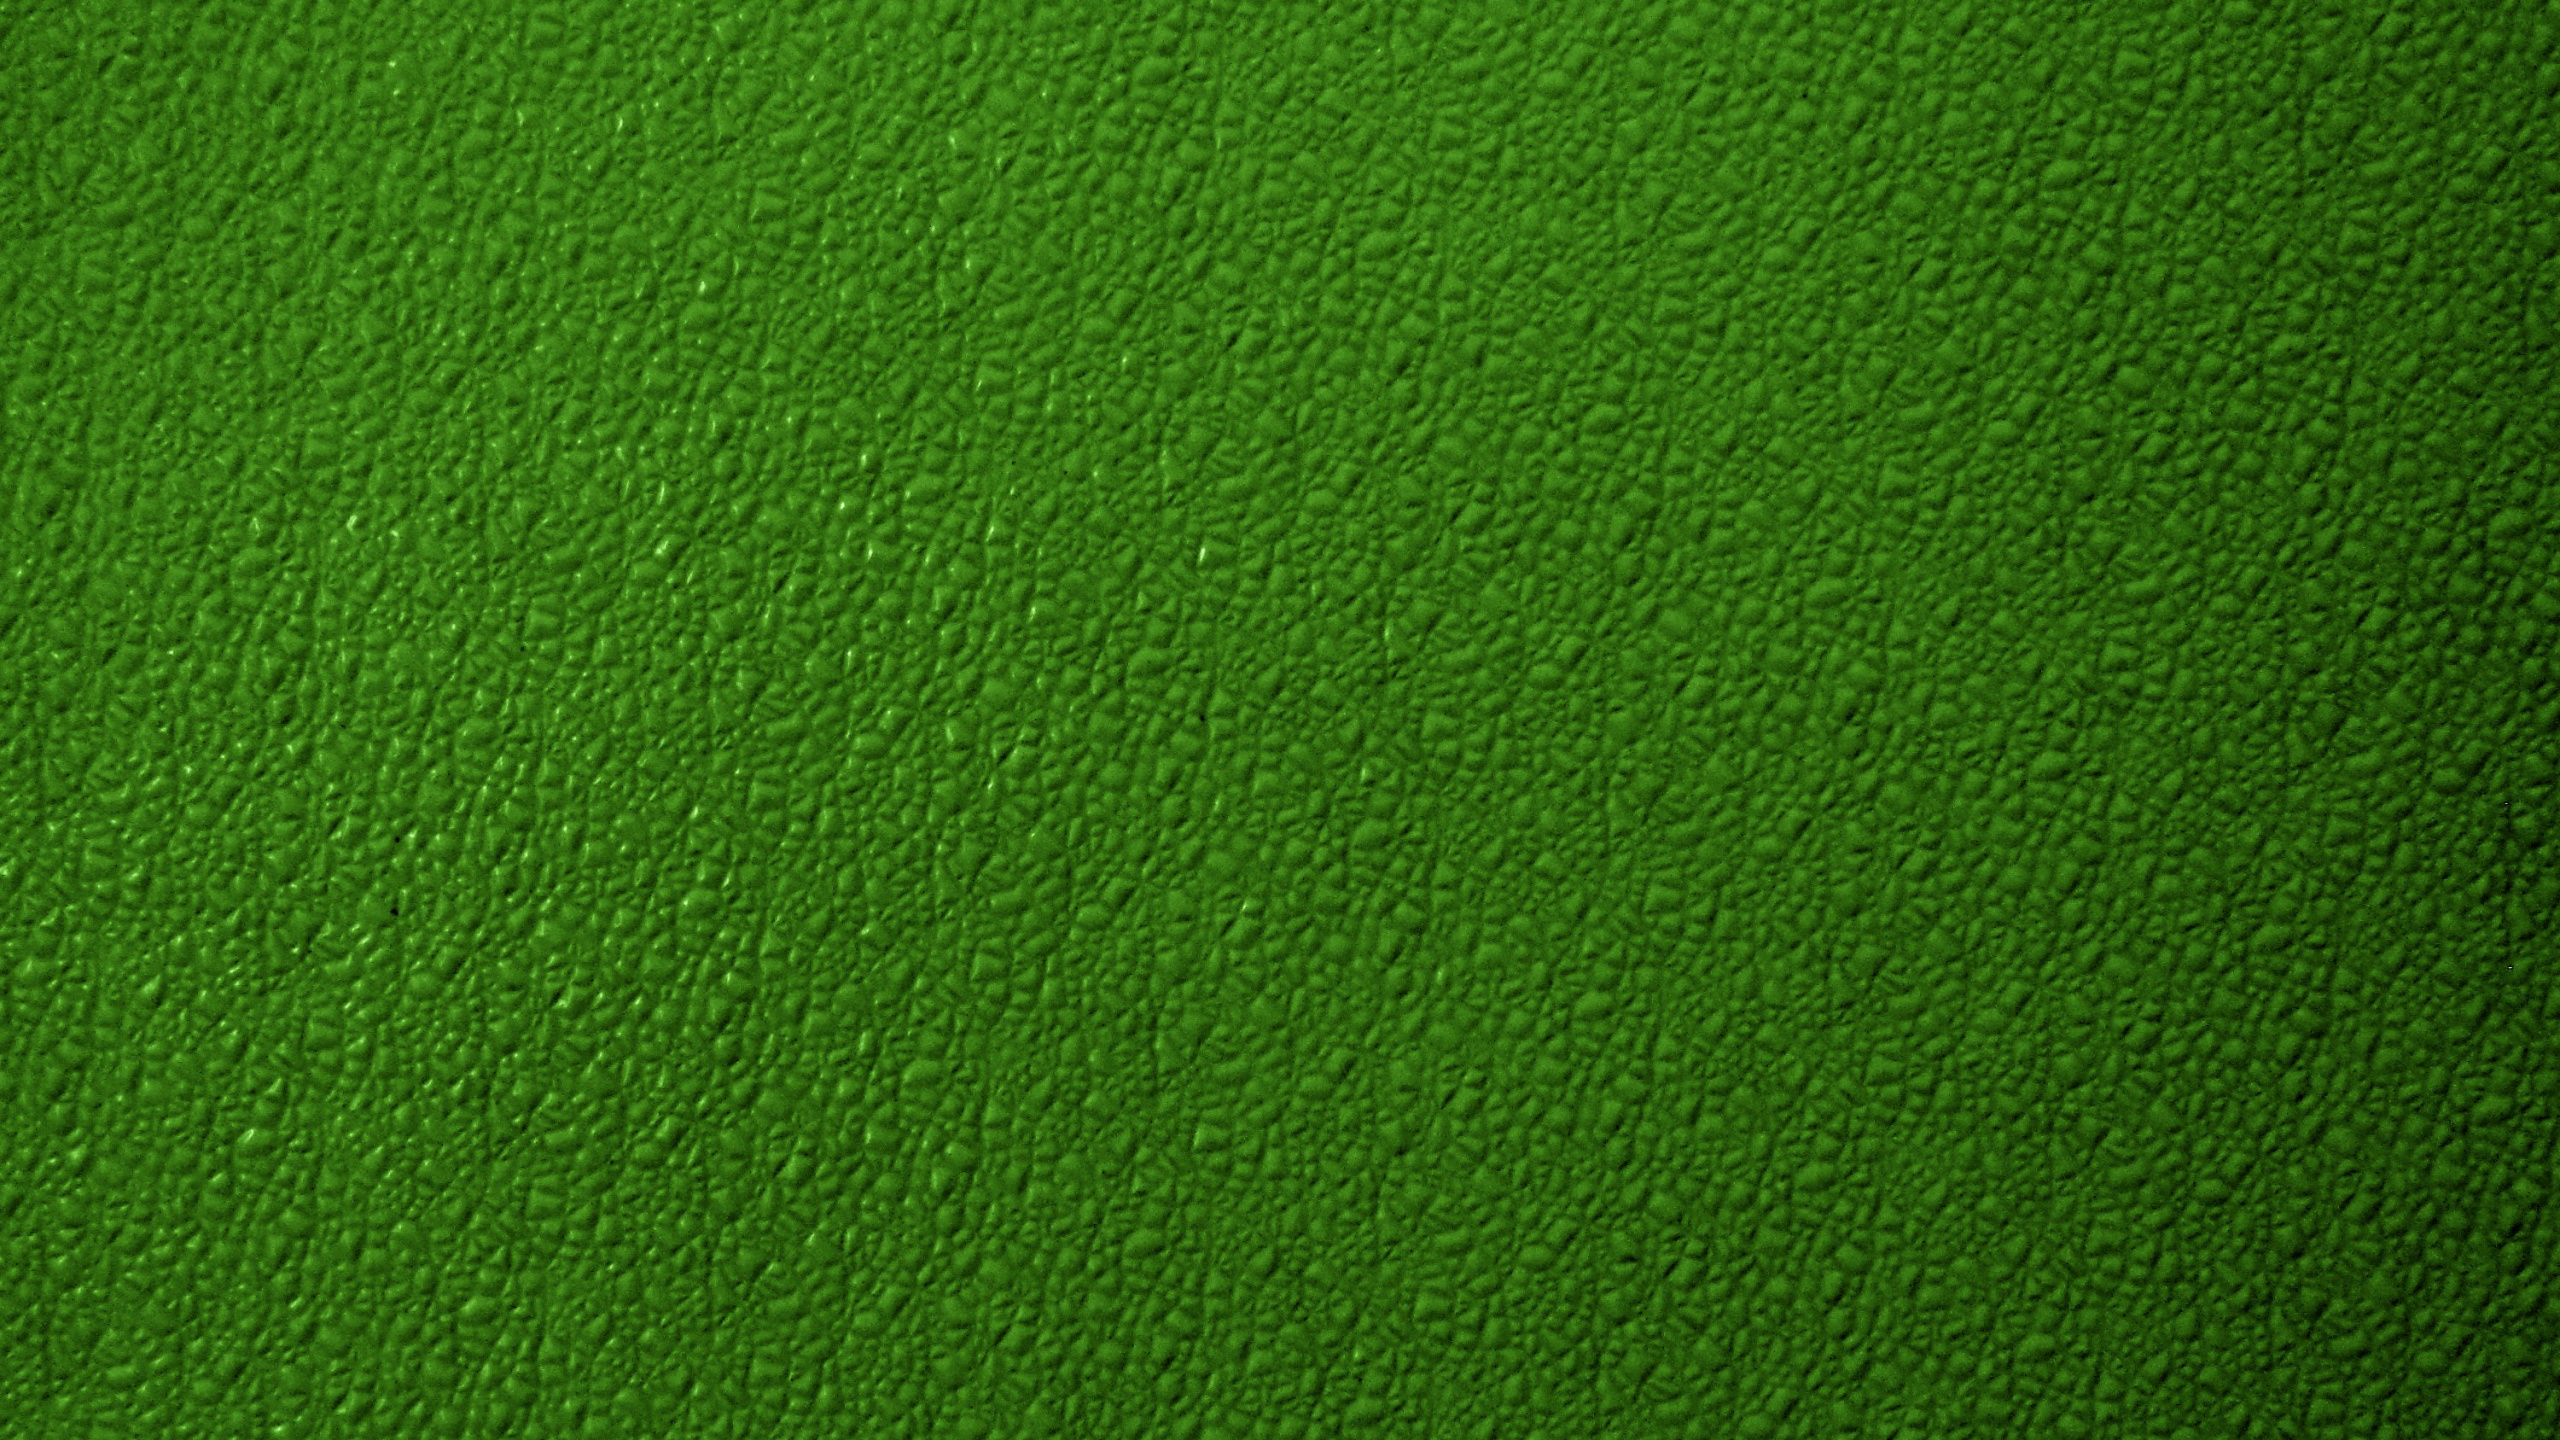 草地上, 纹理, 绿色的, 草, 人造草坪 壁纸 2560x1440 允许